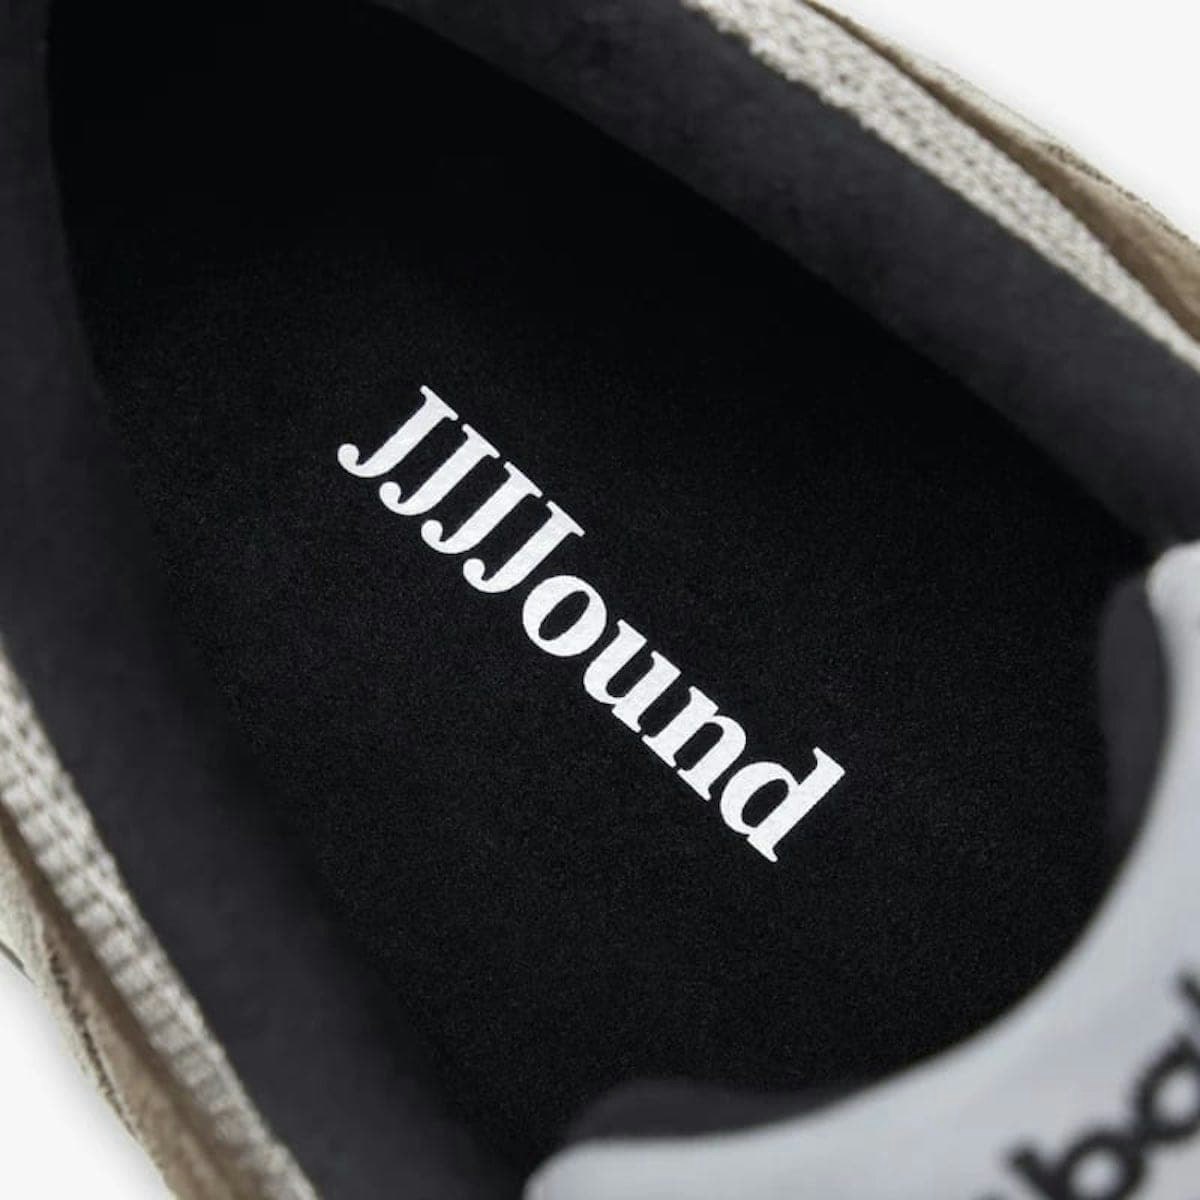 JJJJound x New Balance 991 "Made in UK" (Donkey)